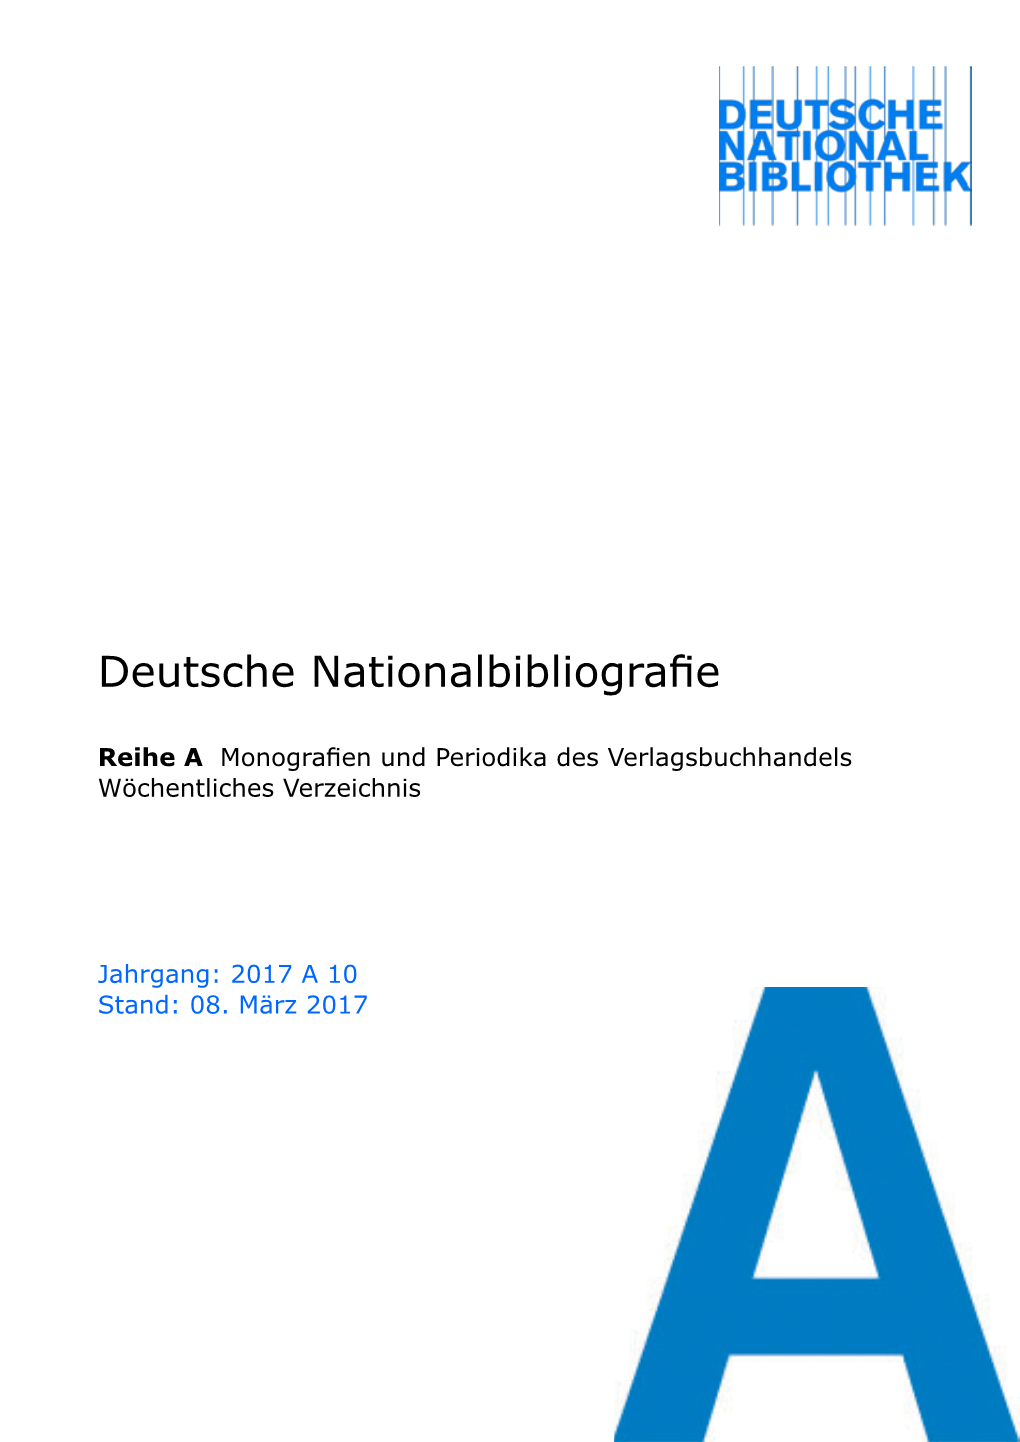 Deutsche Nationalbibliografie 2017 a 10